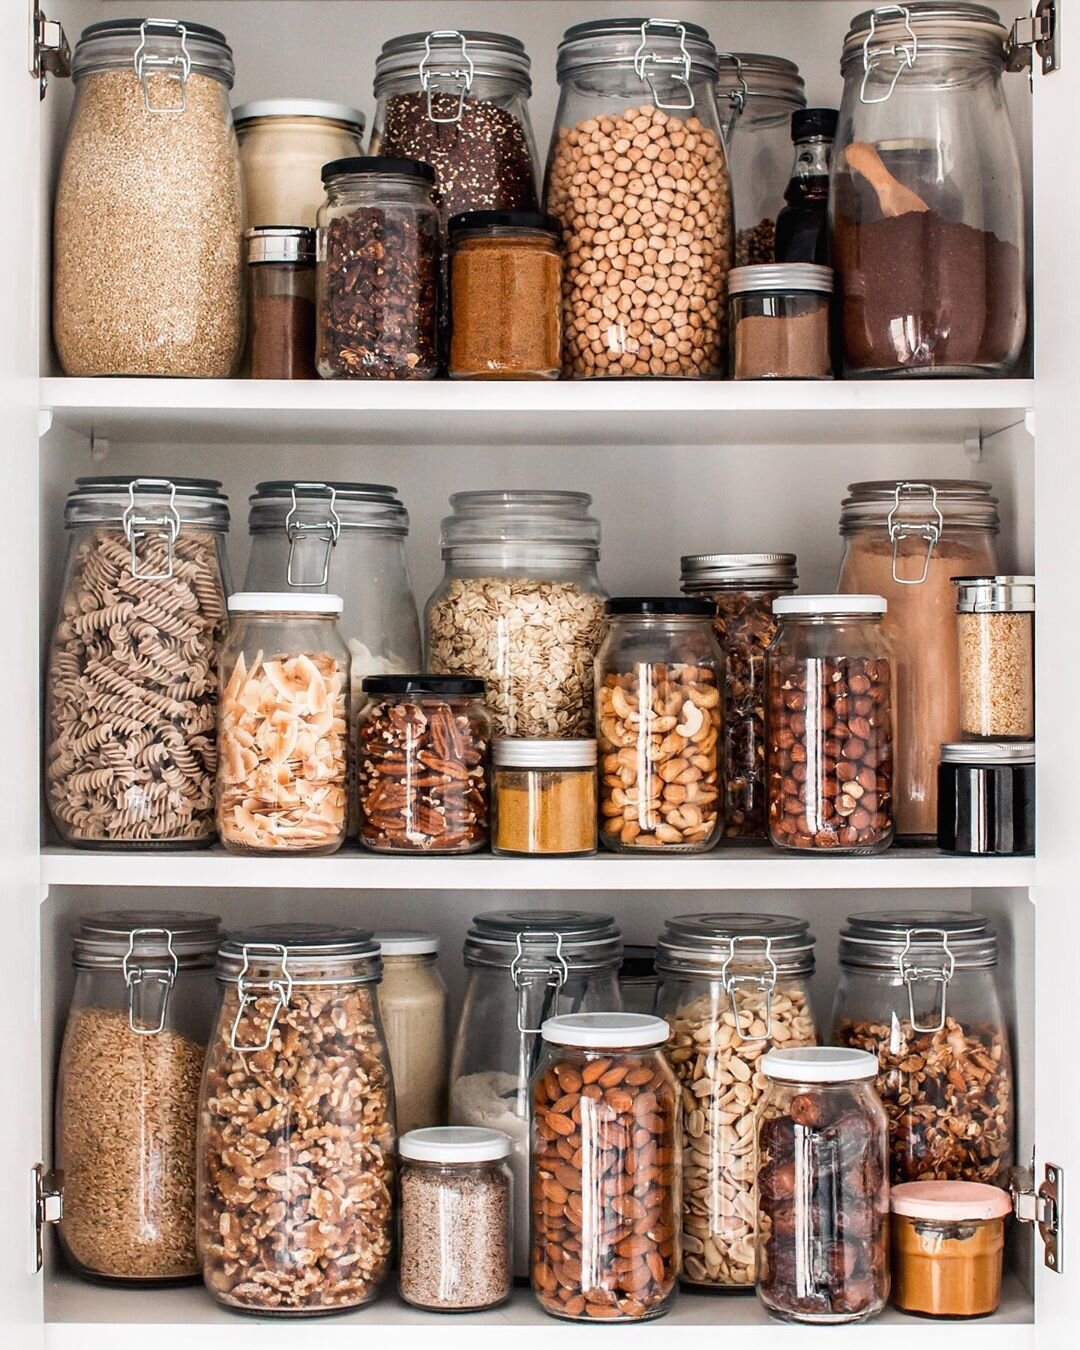 Kiler ve Mutfak Dolaplarını Nasıl Düzenleyebilirsin? | Mutfak Depolama  Alanları — Dekorasyon Önerileri & Trendler, Kendin Yap Fikirleri |  Armut.com Blog